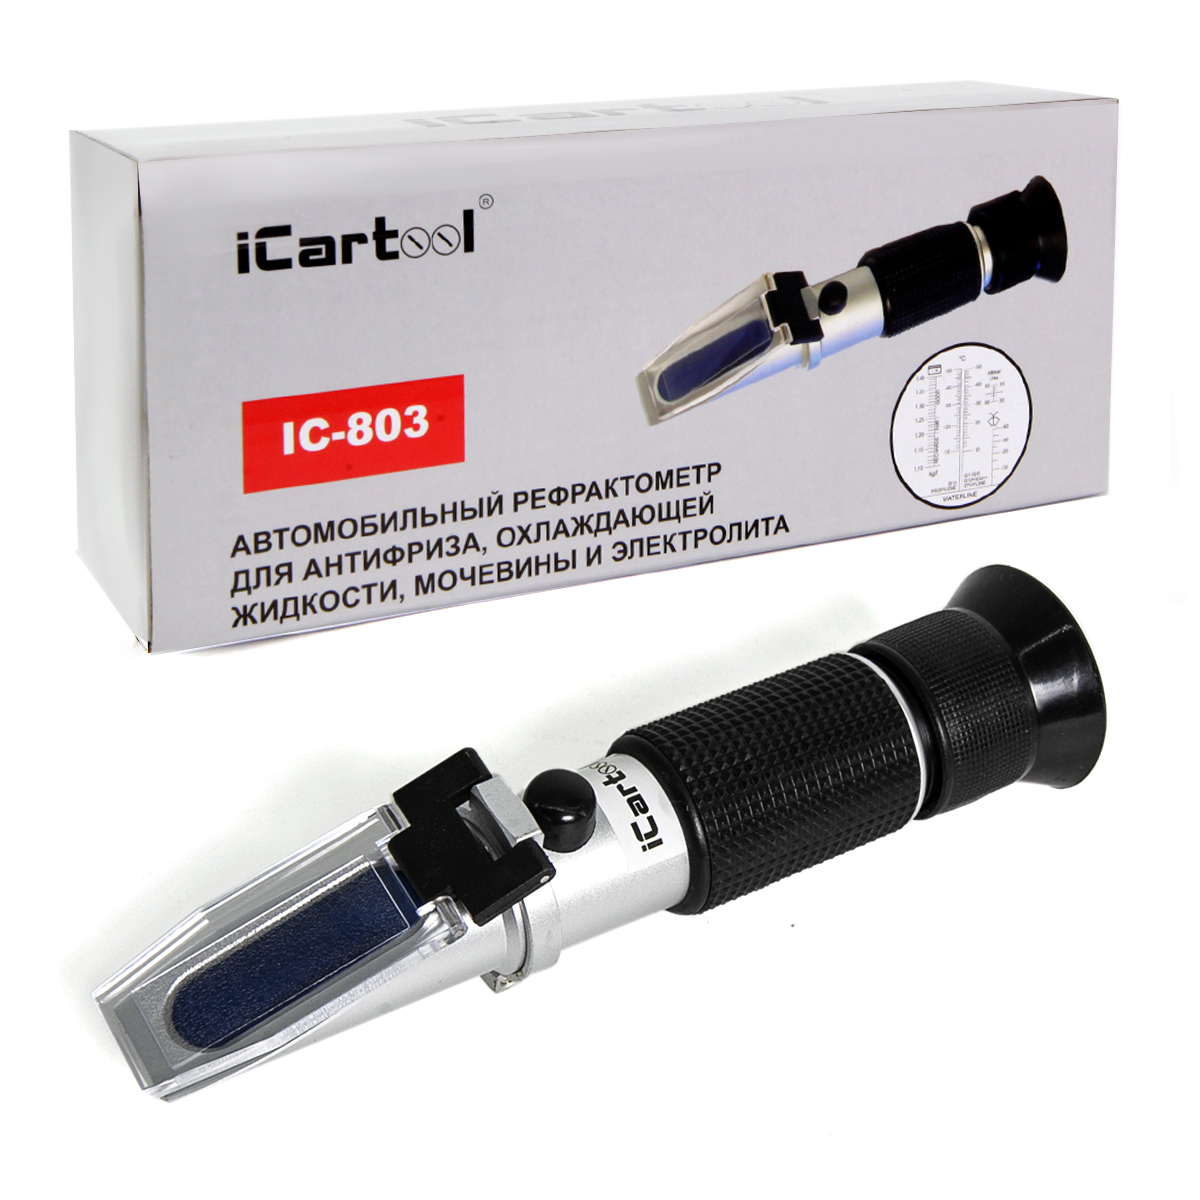 Автомобильный рефрактометр для антифриза и охл. жидкости и электролита iCartool IC-803